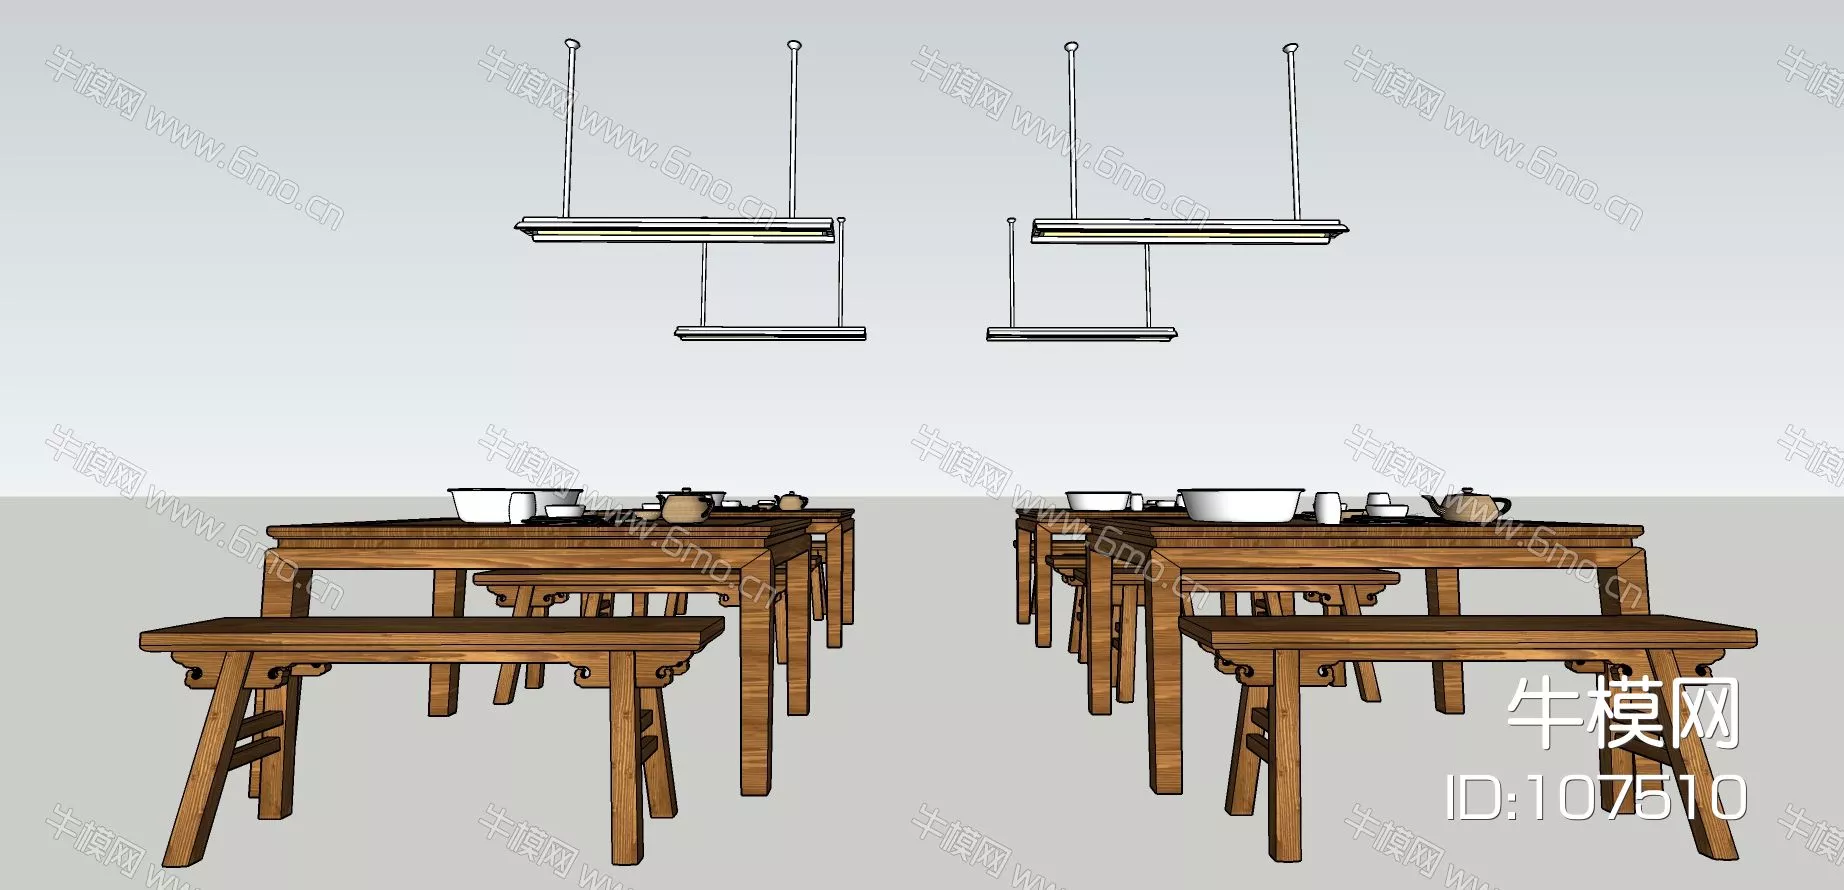 MODERN DINING TABLE SET - SKETCHUP 3D MODEL - ENSCAPE - 107510